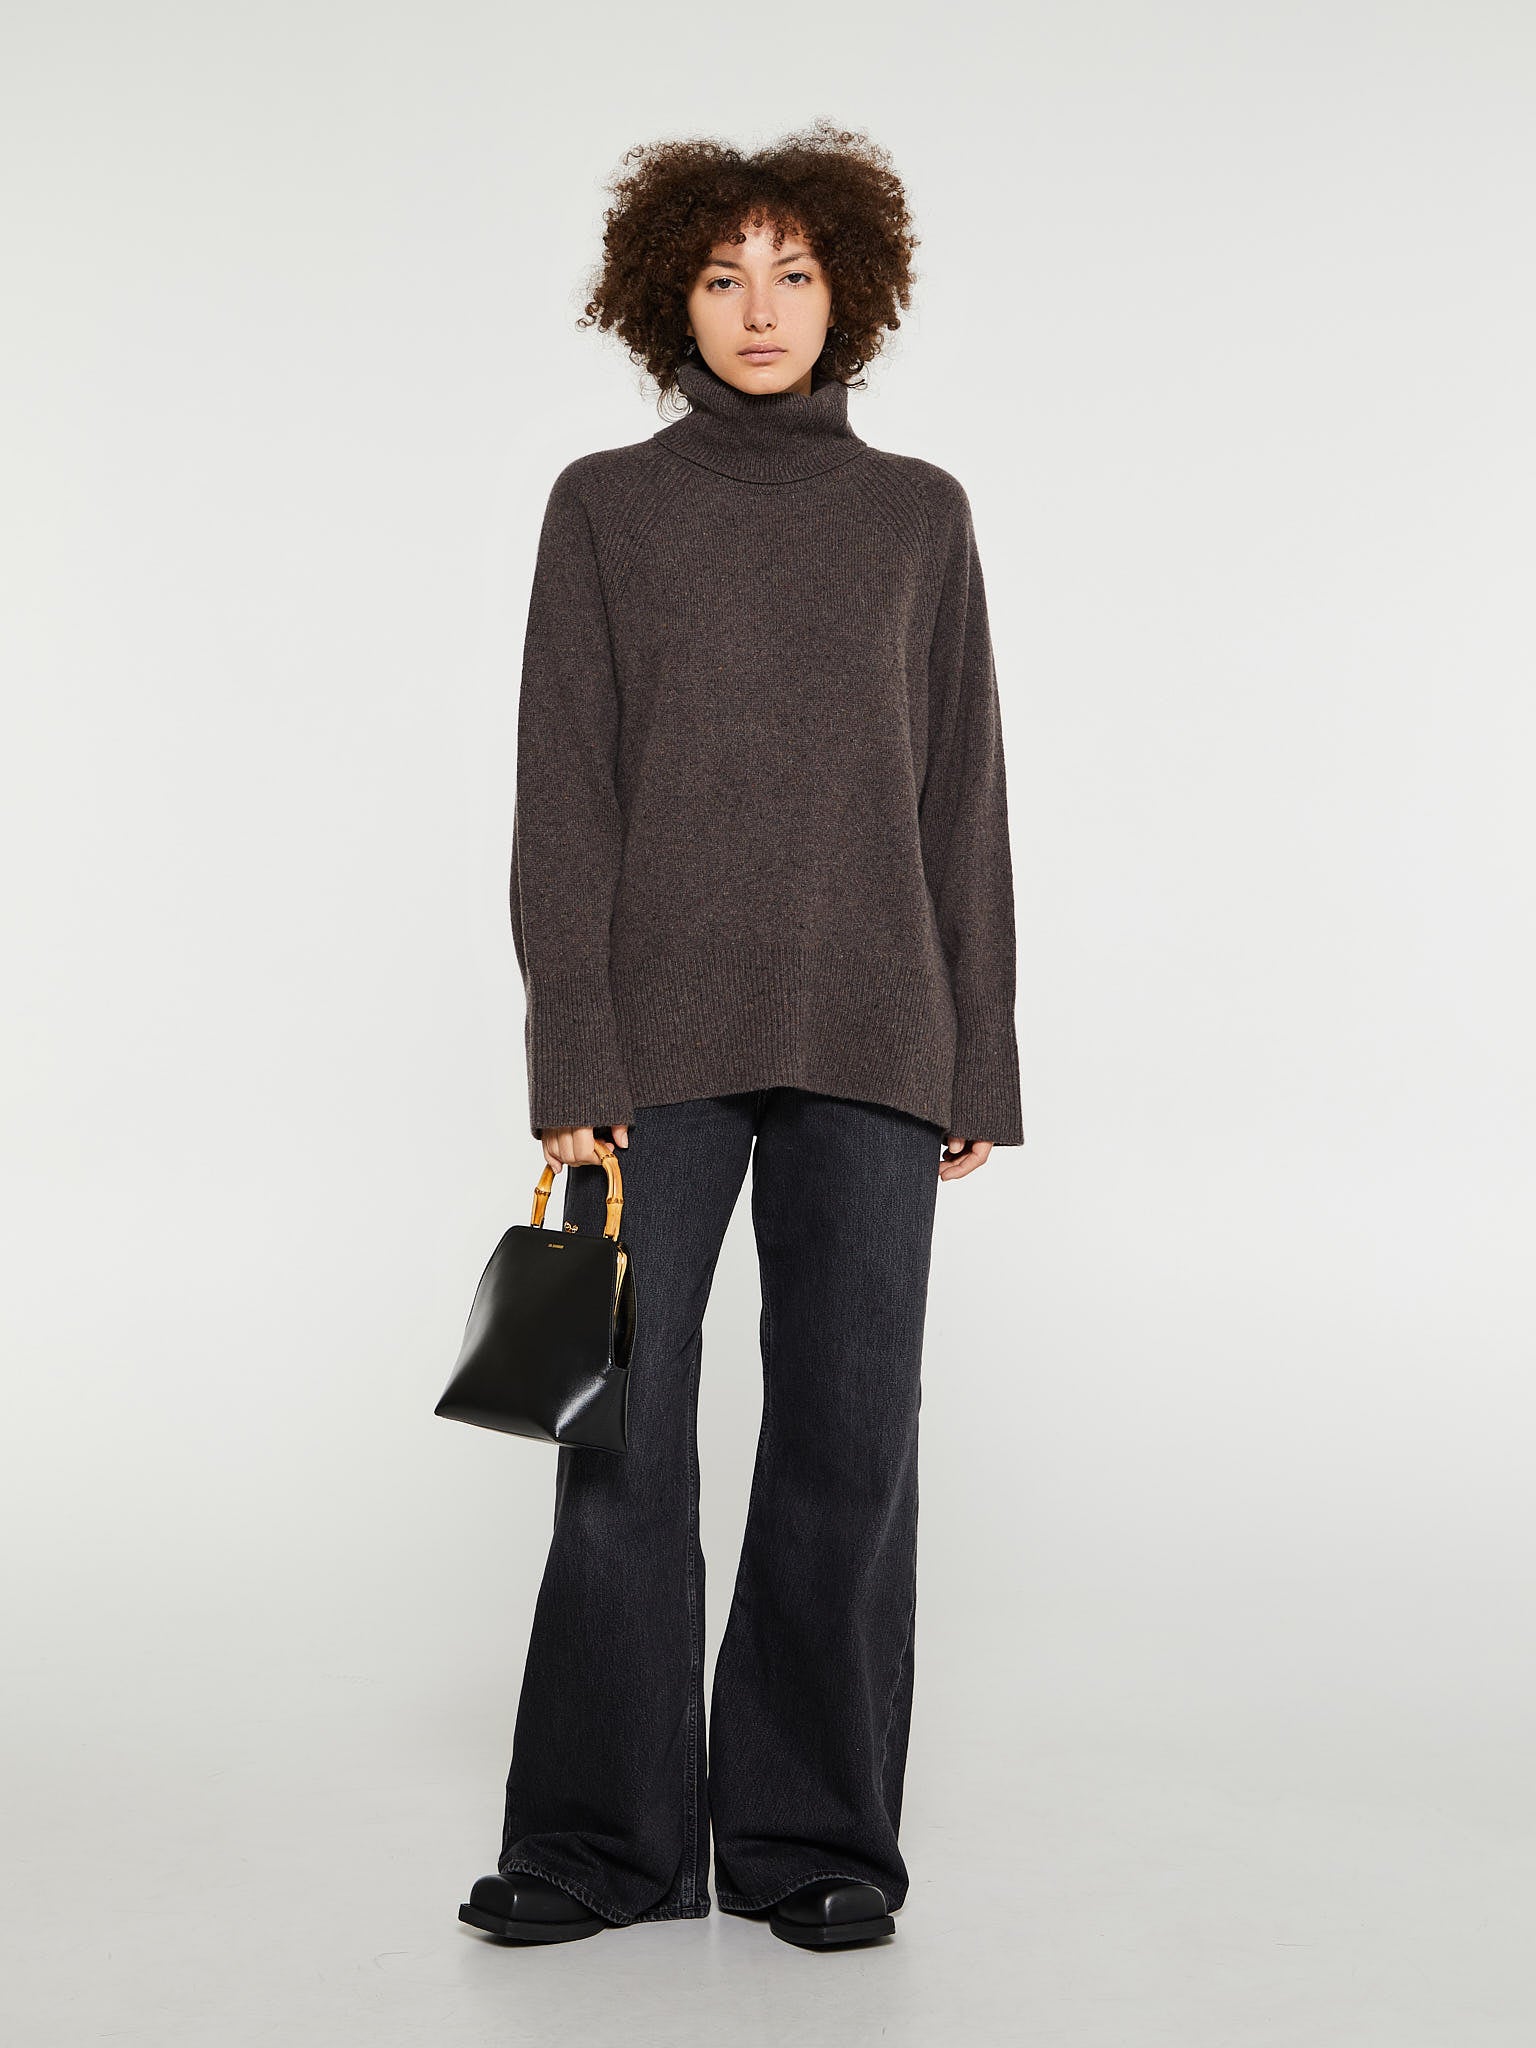 Svala Cashmere Sweater in Dark Brown